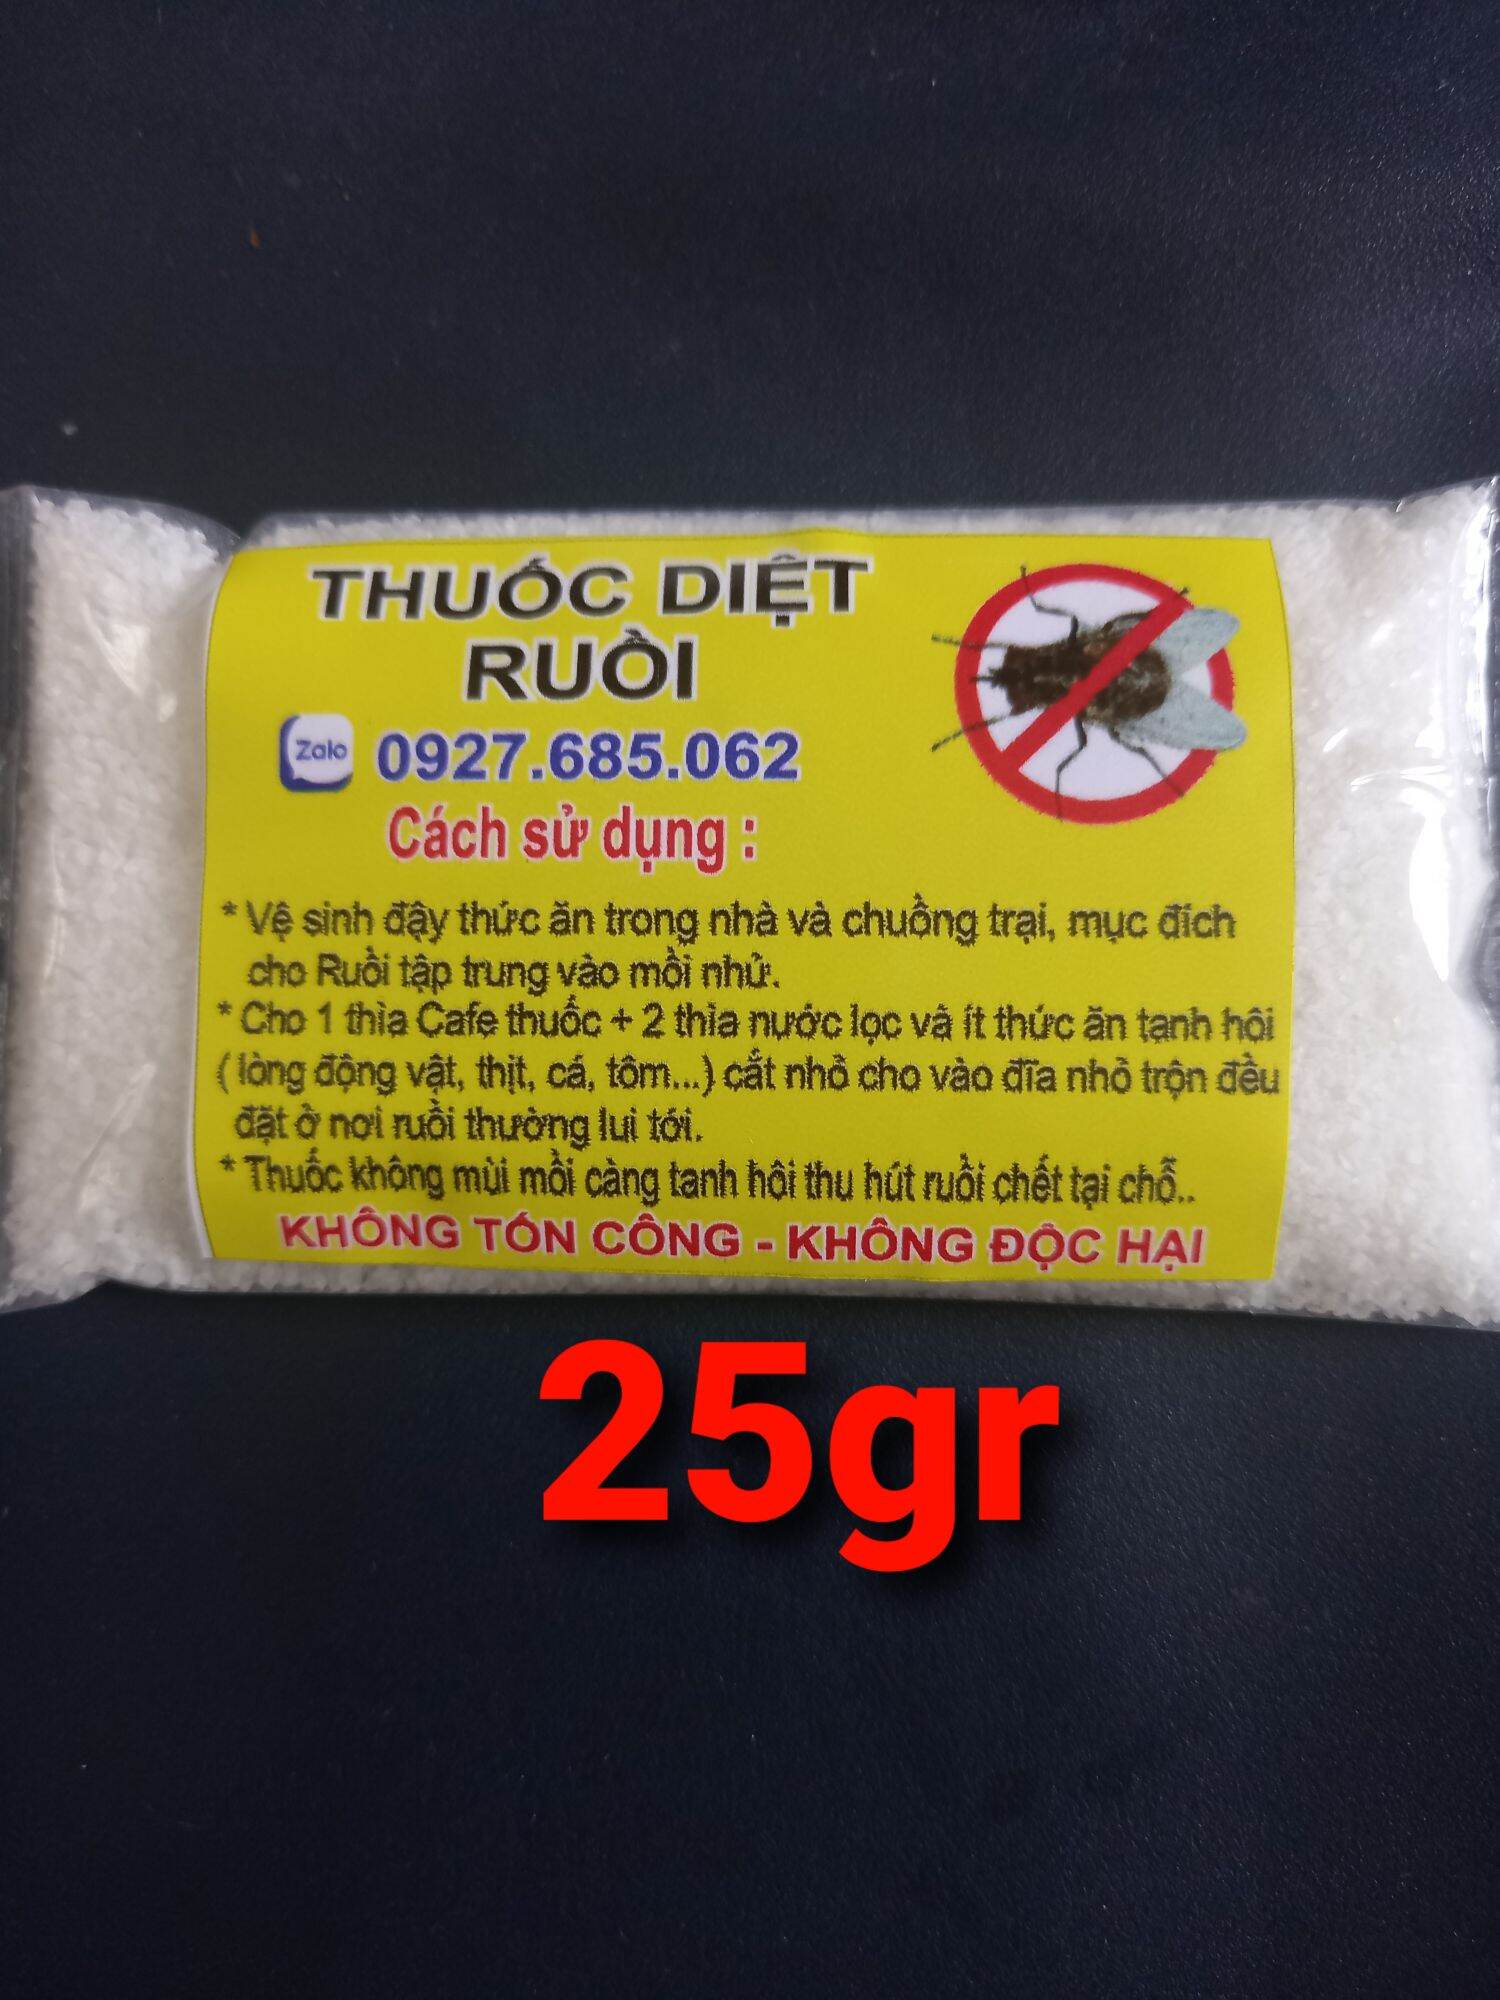 Thuốc diệt ruồi 50gr an toàn tiết kiệm hiệu quả trong nhà và chuồng trại thumbnail